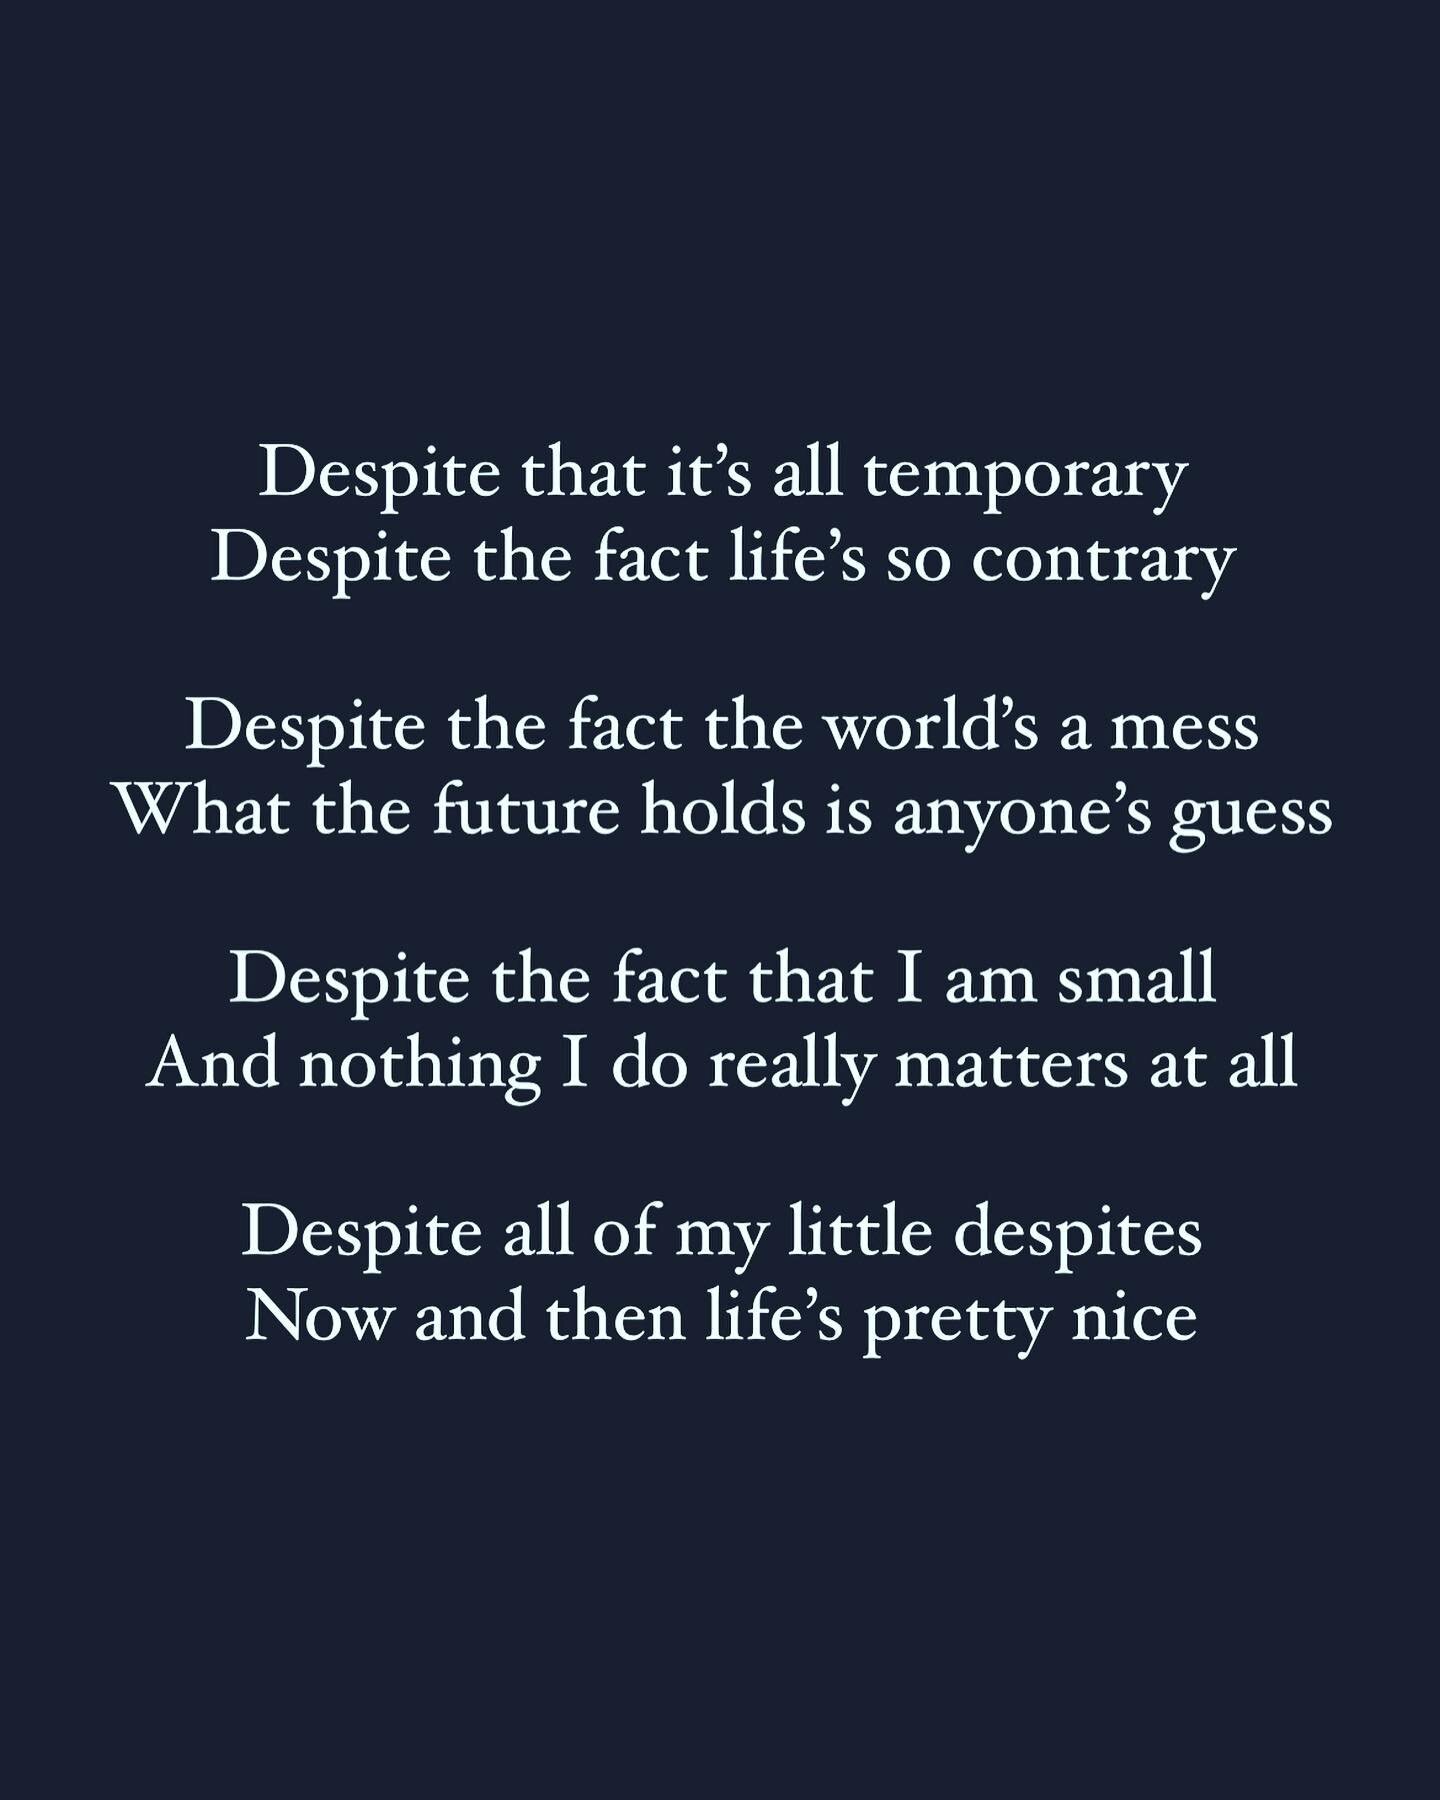 Despite despite despite

#poems #poem #poetry #poetsofinstagram